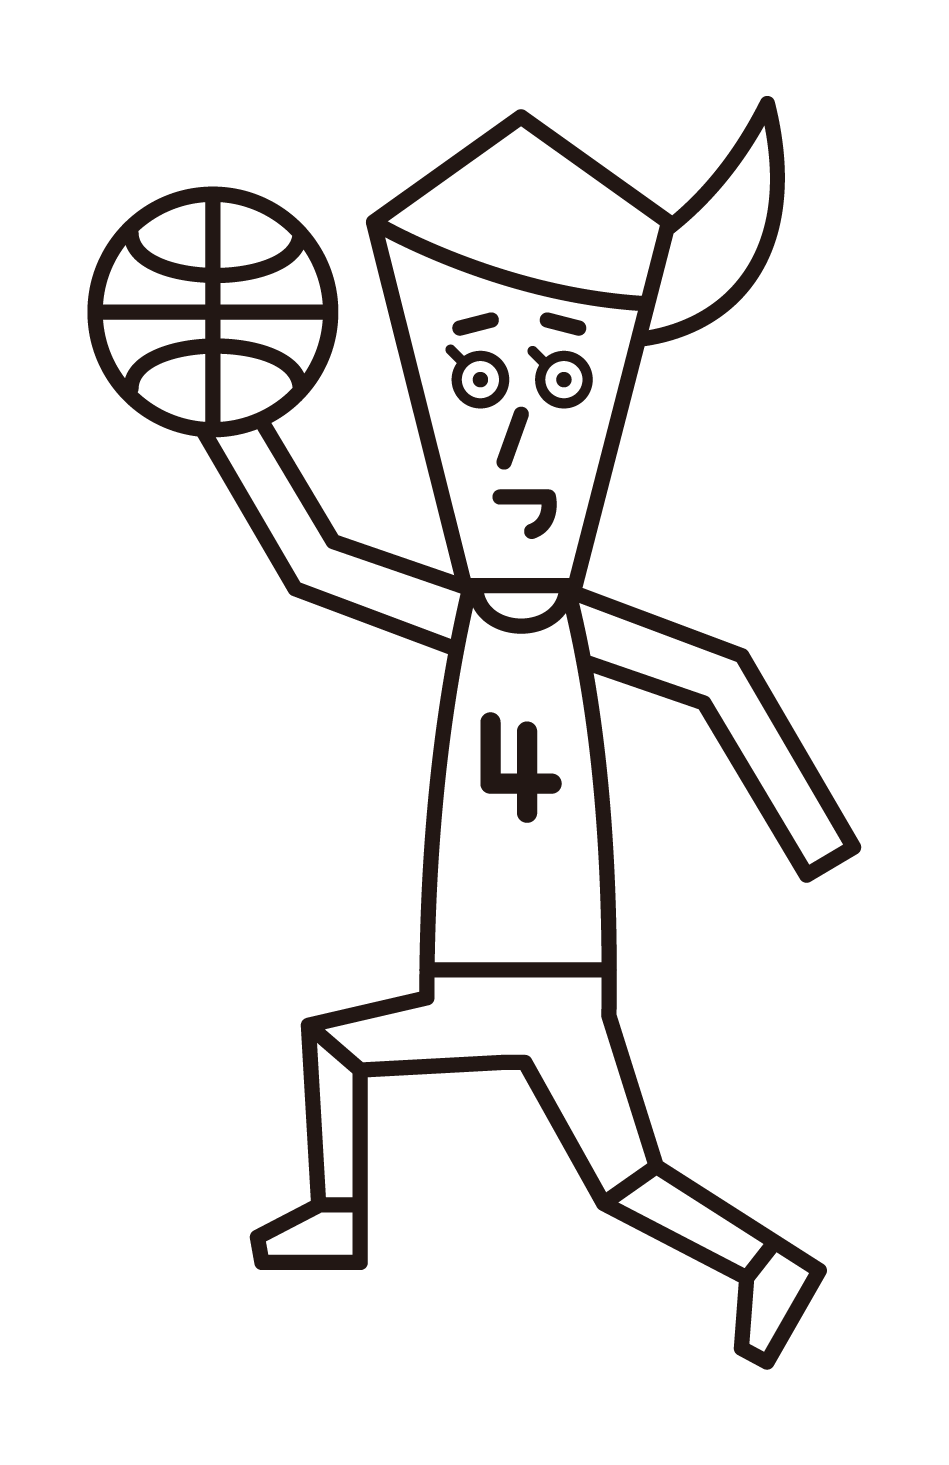 レイアップシュートをするバスケットボール選手（女性）のイラスト